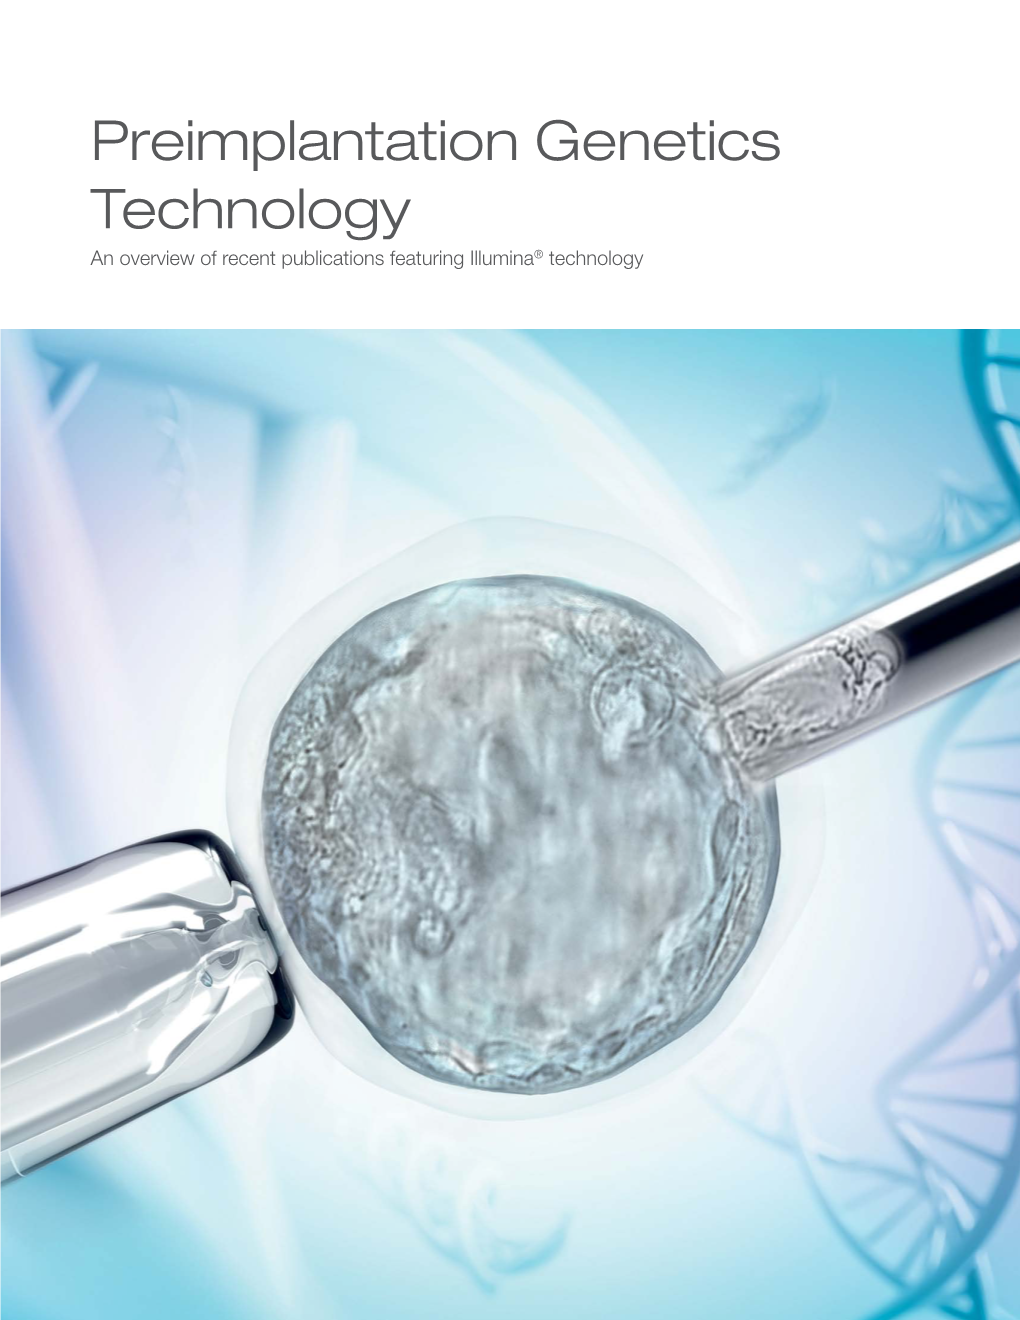 Preimplantation Genetics Technology Publication Review